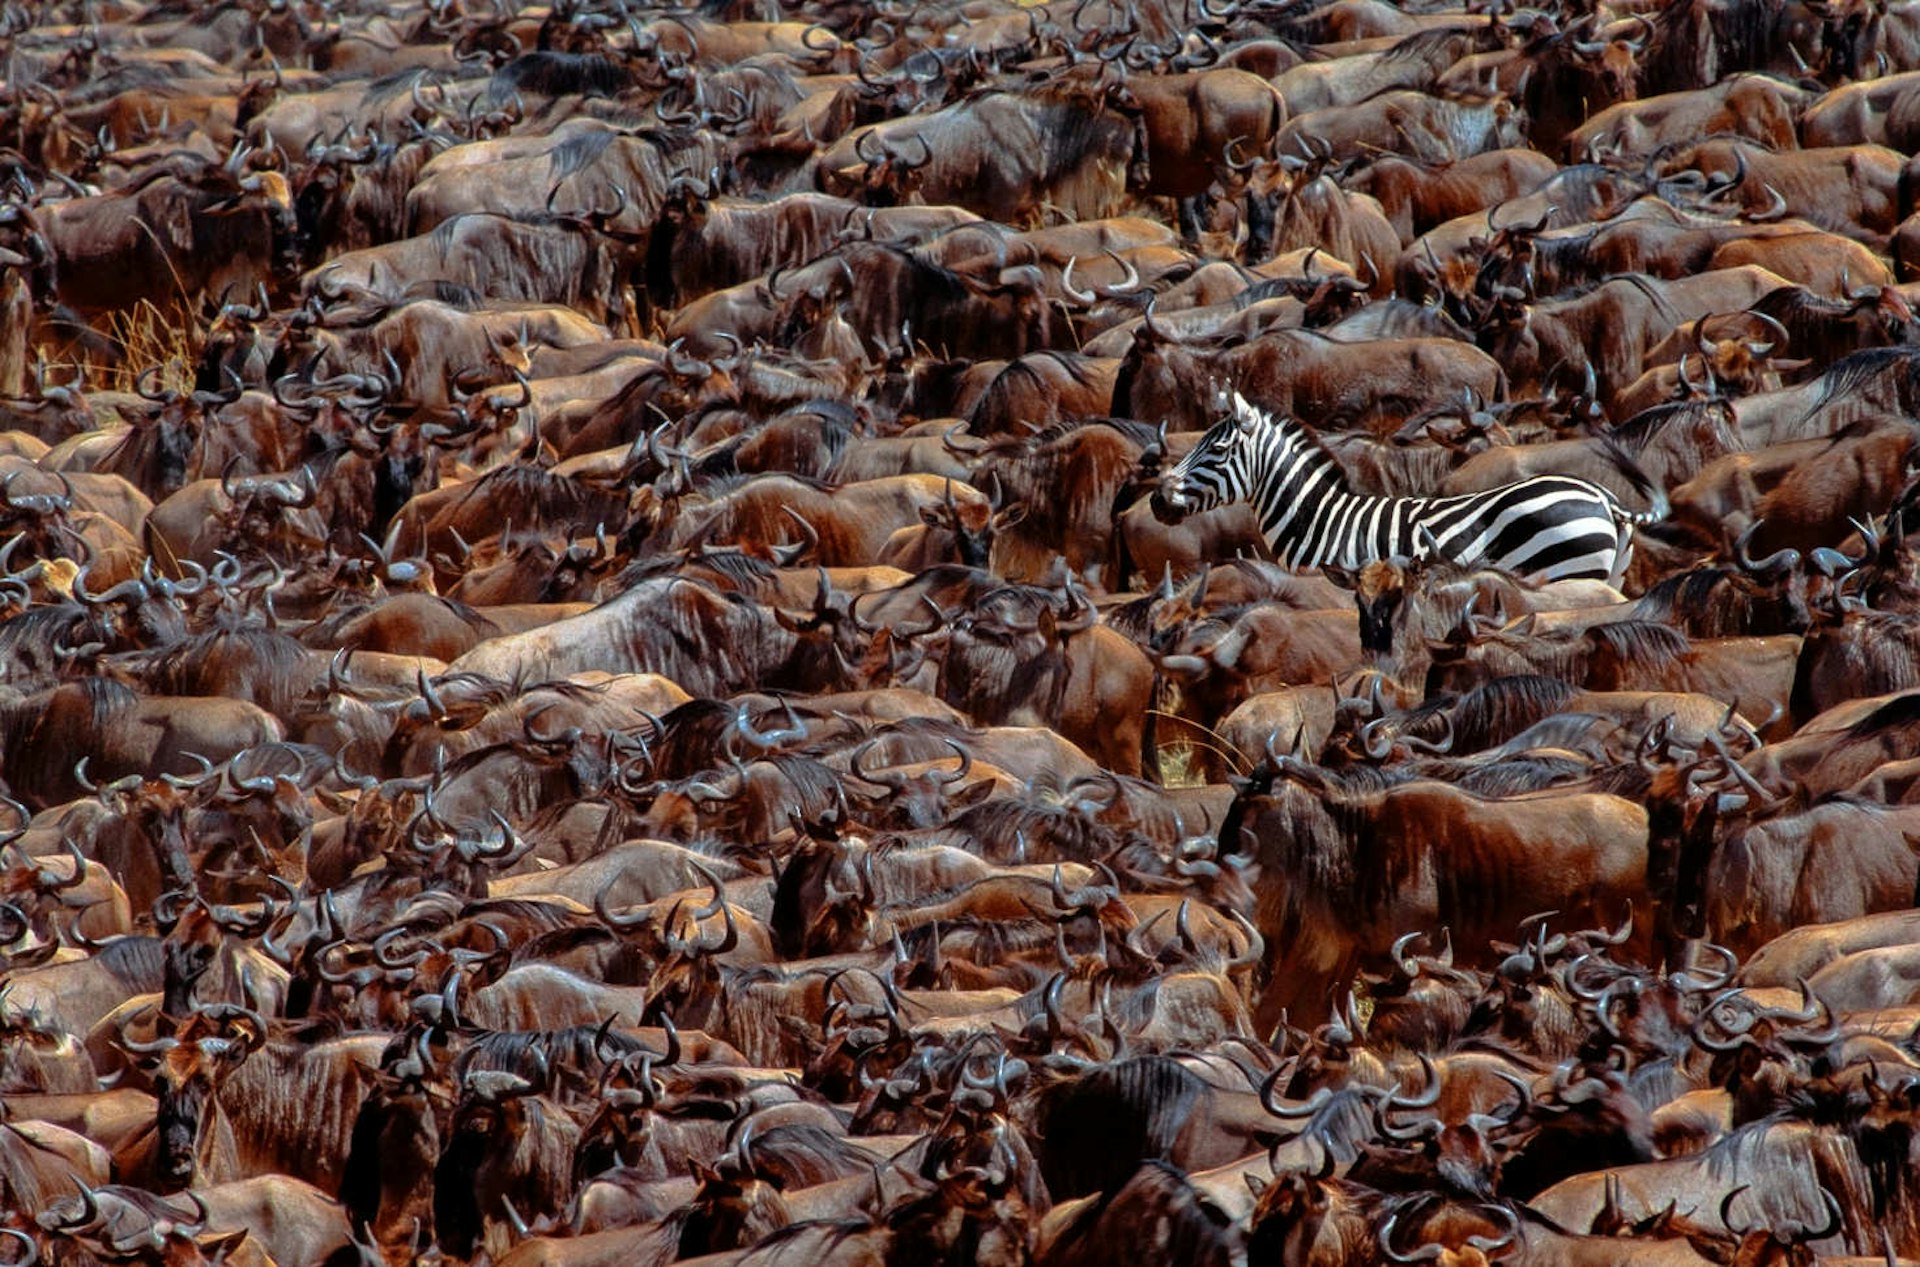 A lone zebra engulfed amidst a huge herd of wildebeest in Kenya's Masai Mara National Reserve © Art Wolfe